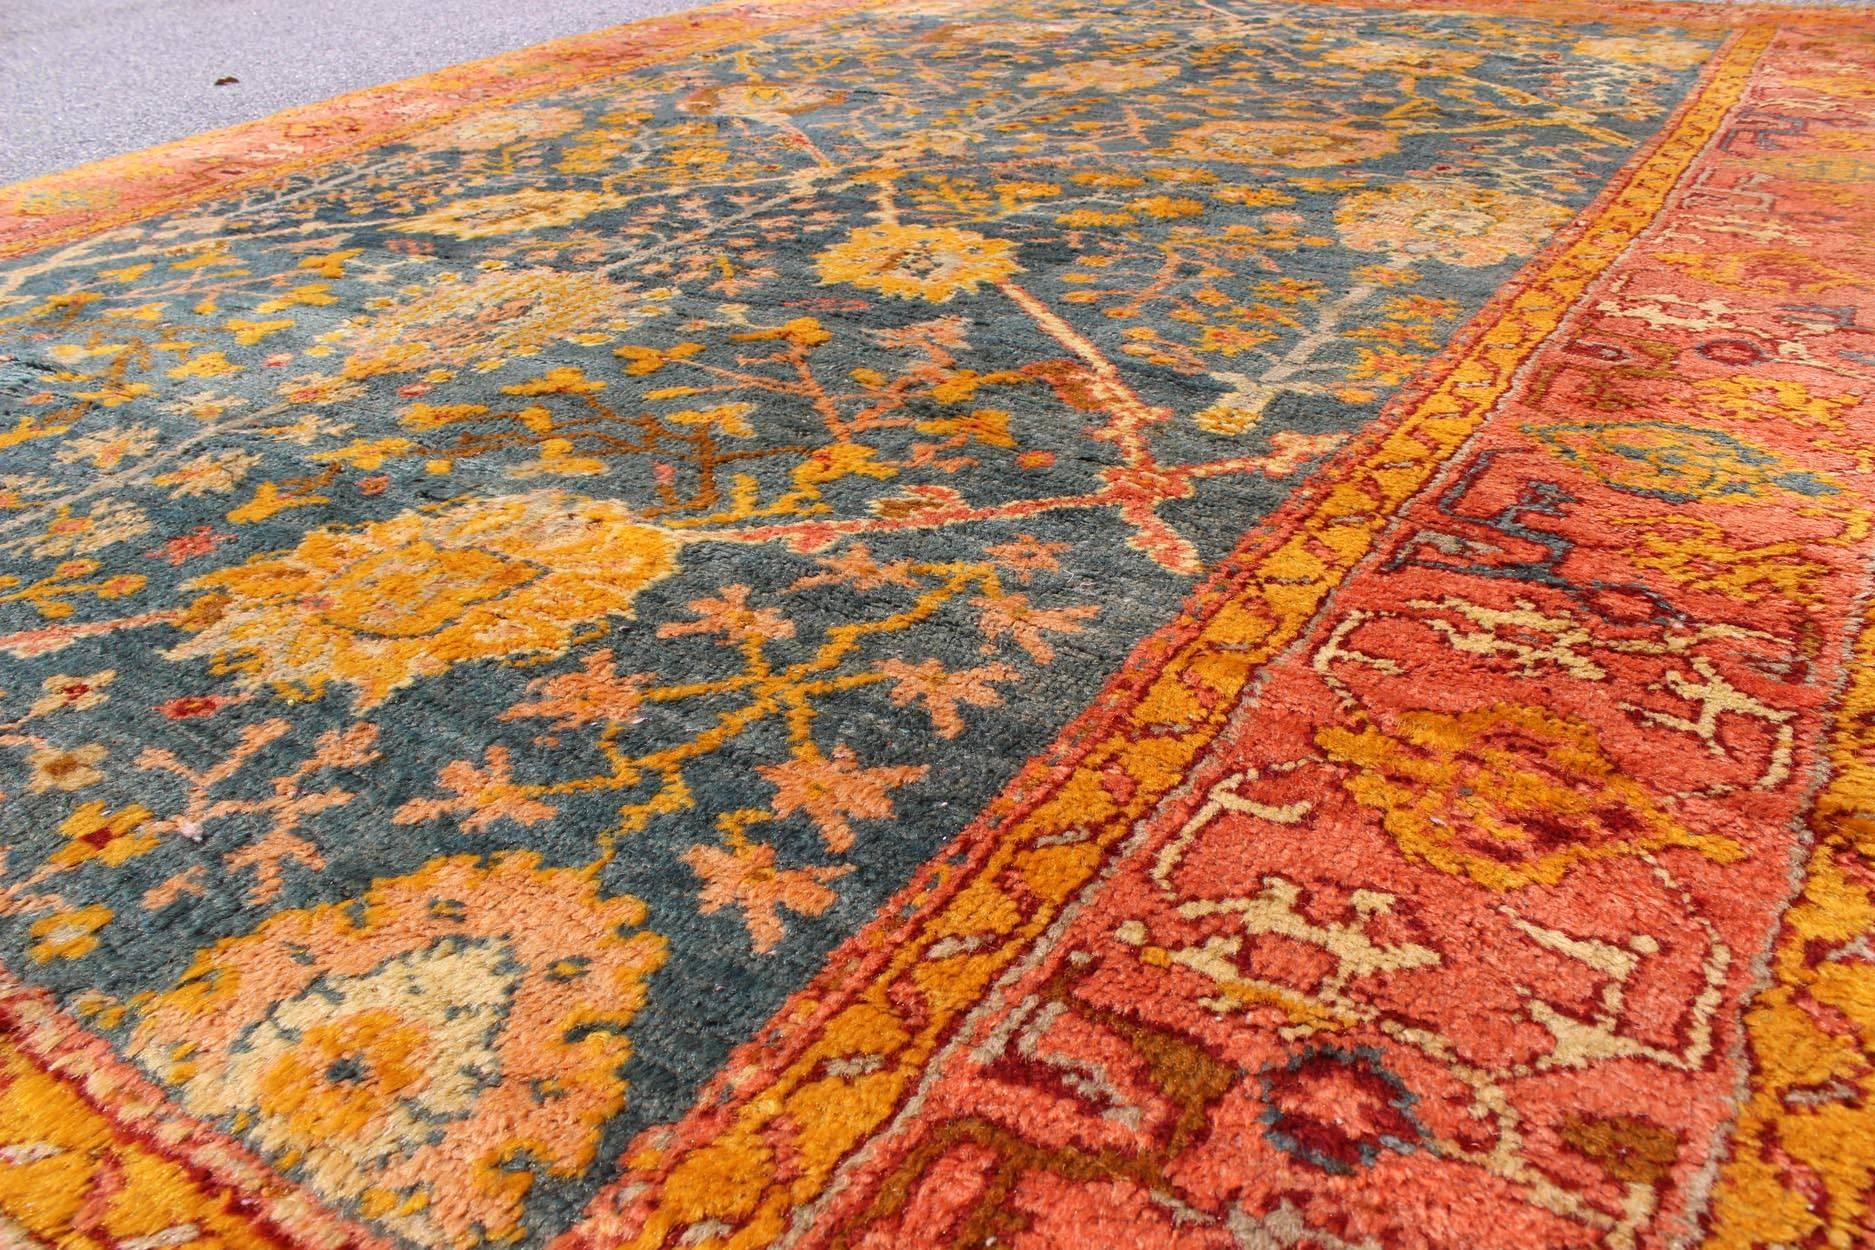 oushak rugs